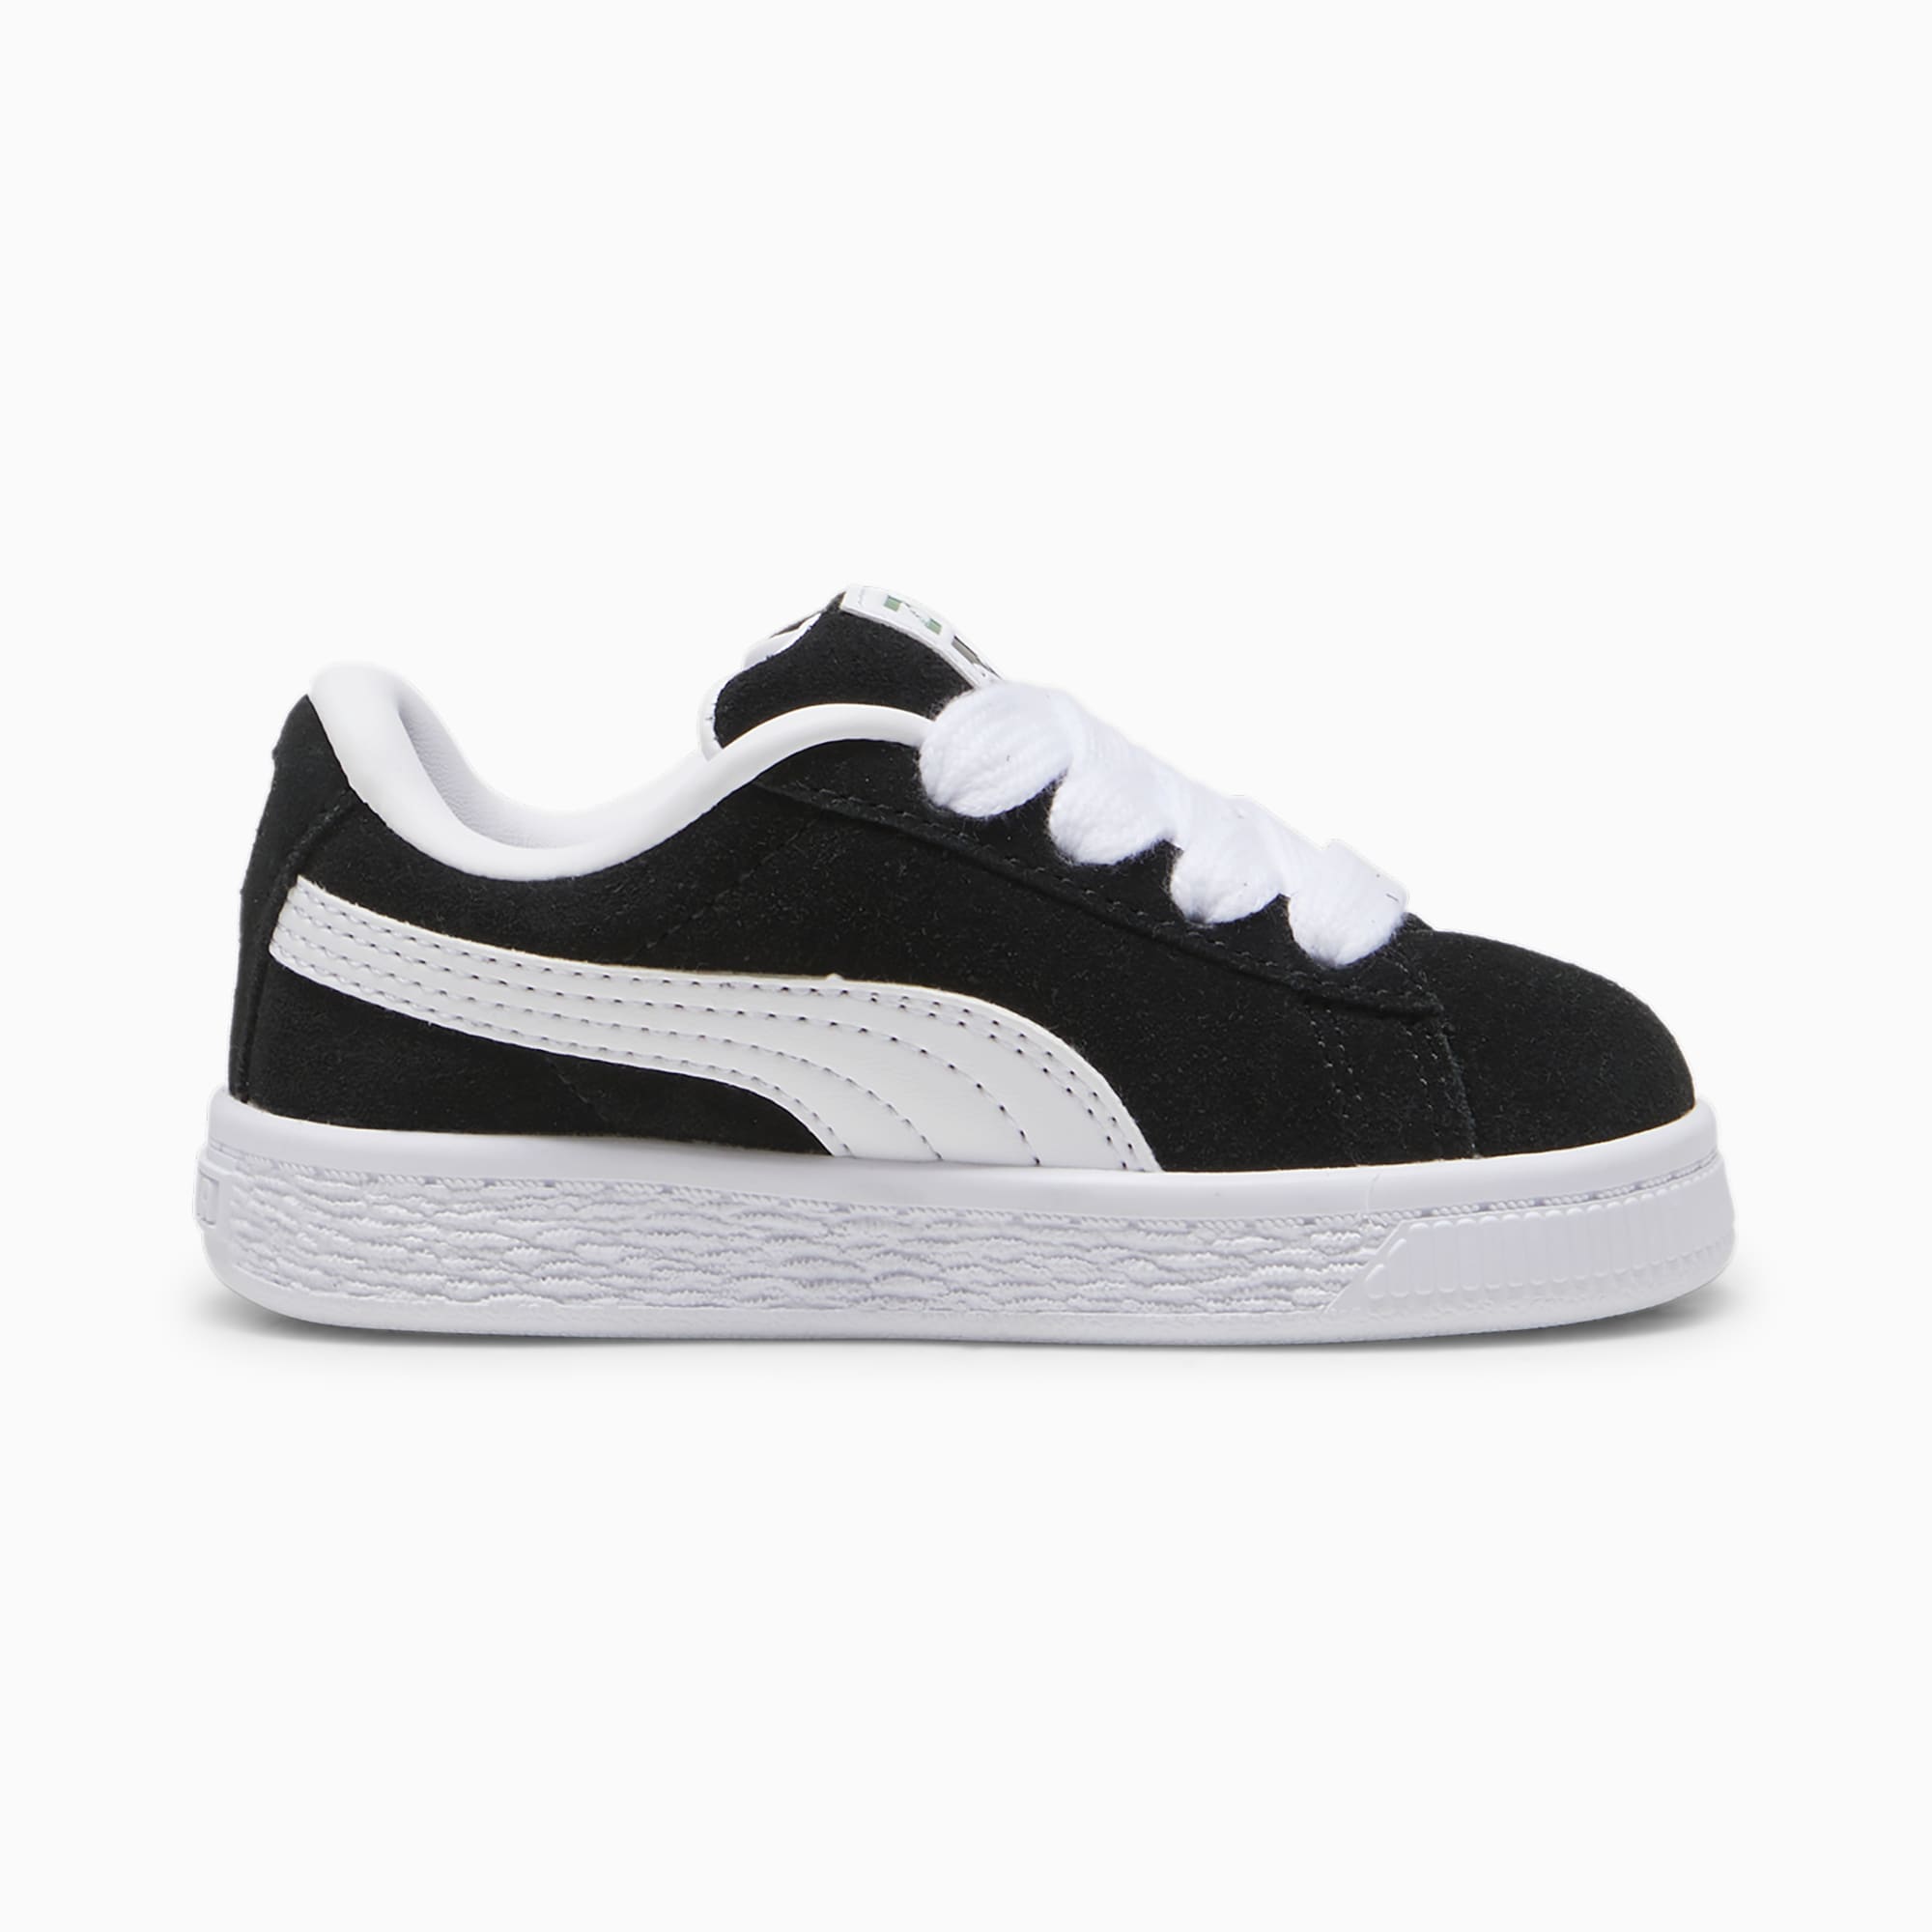 PUMA Suede XL Sneakers Babys Schuhe, Schwarz/Weiß, Größe: 21, Schuhe